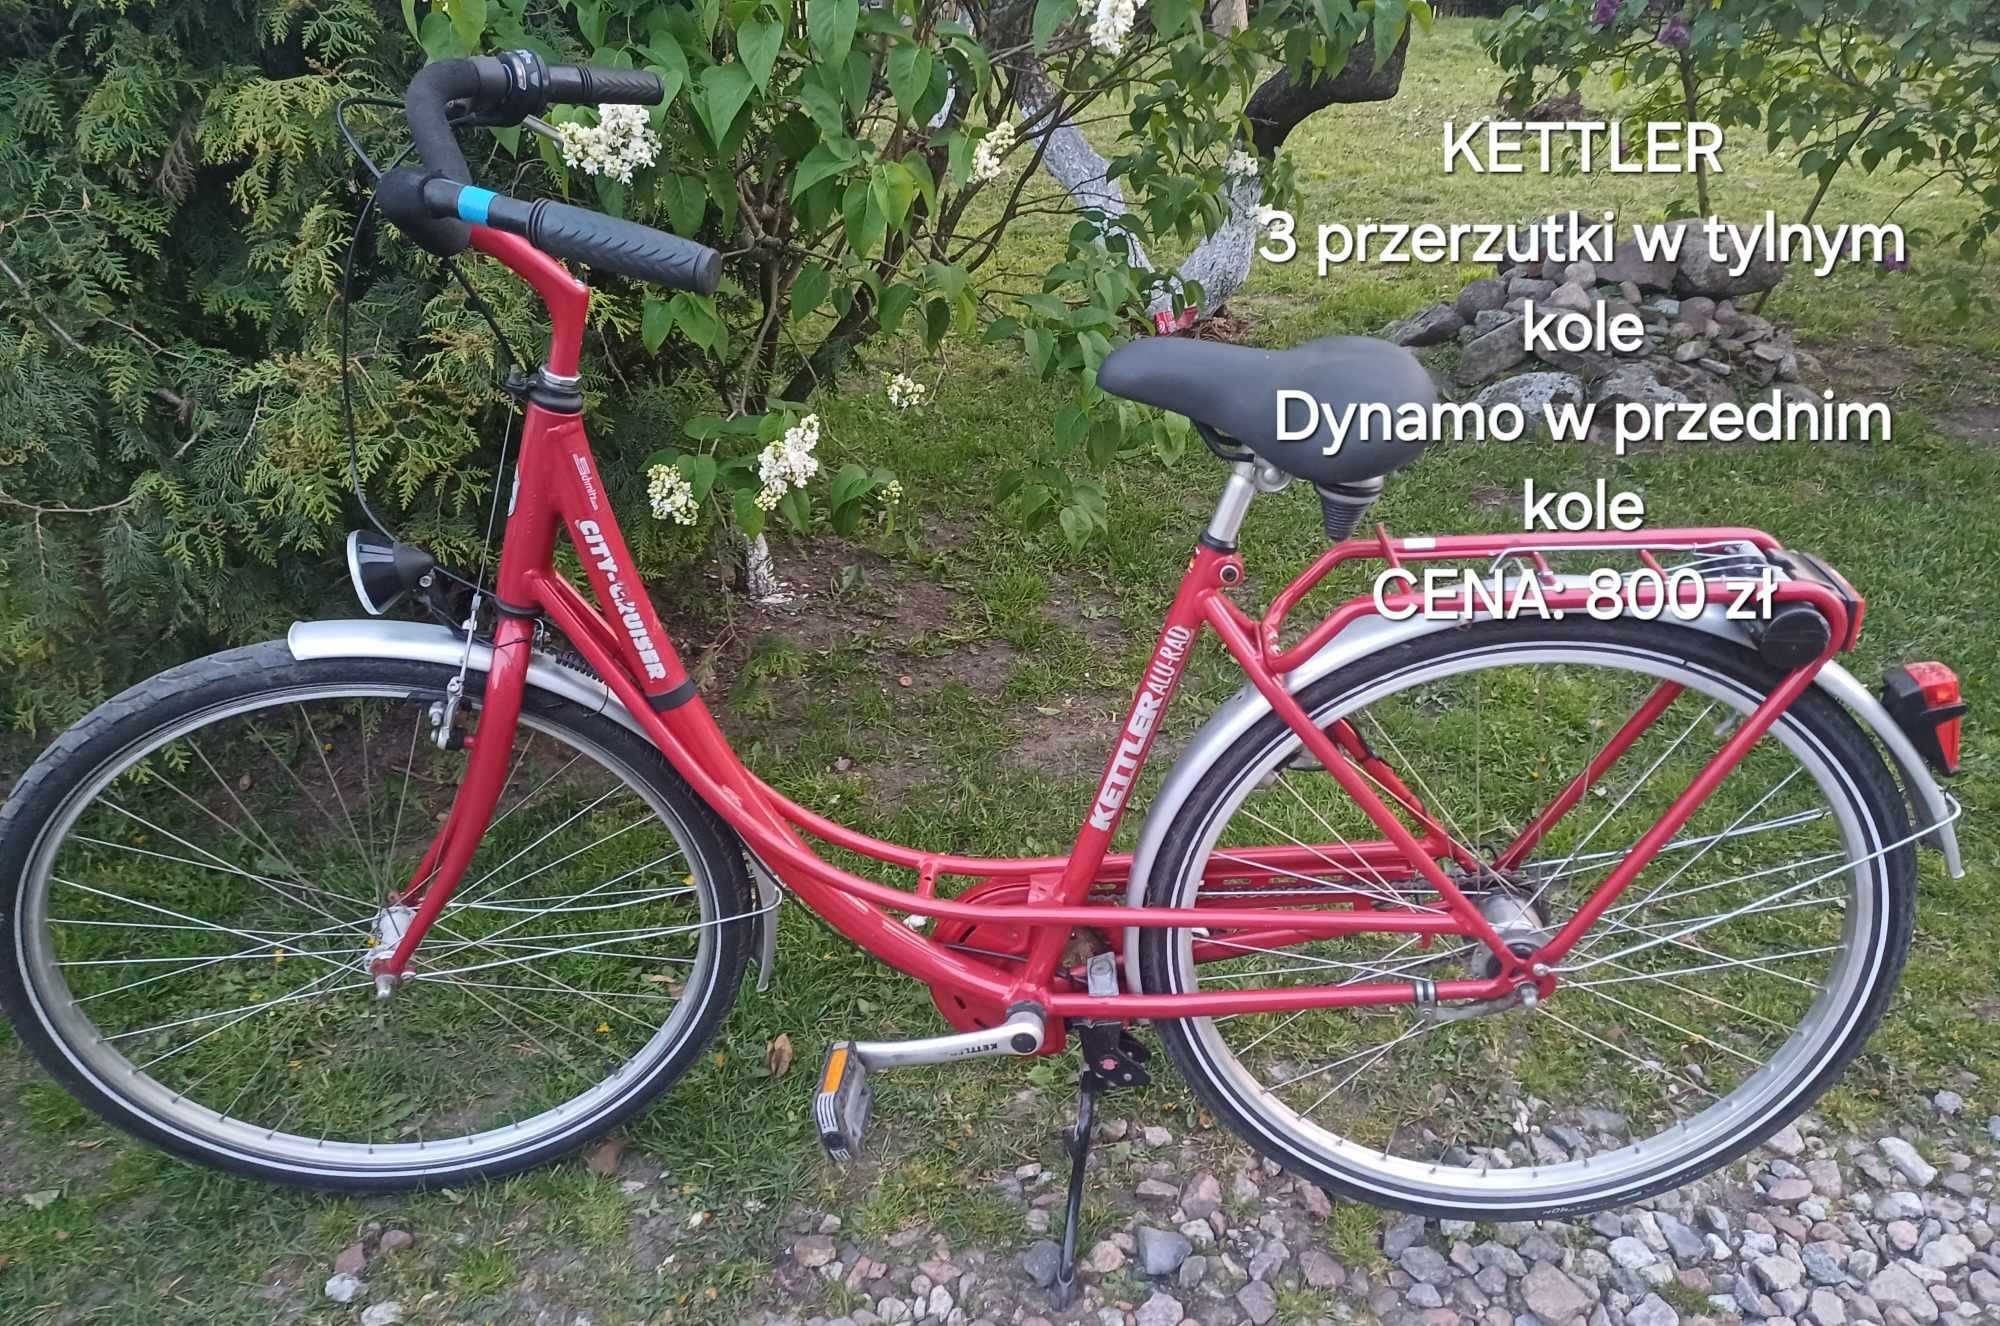 Sprzedaż rowerów holenderskich i niemieckich- super stan, zapraszamy